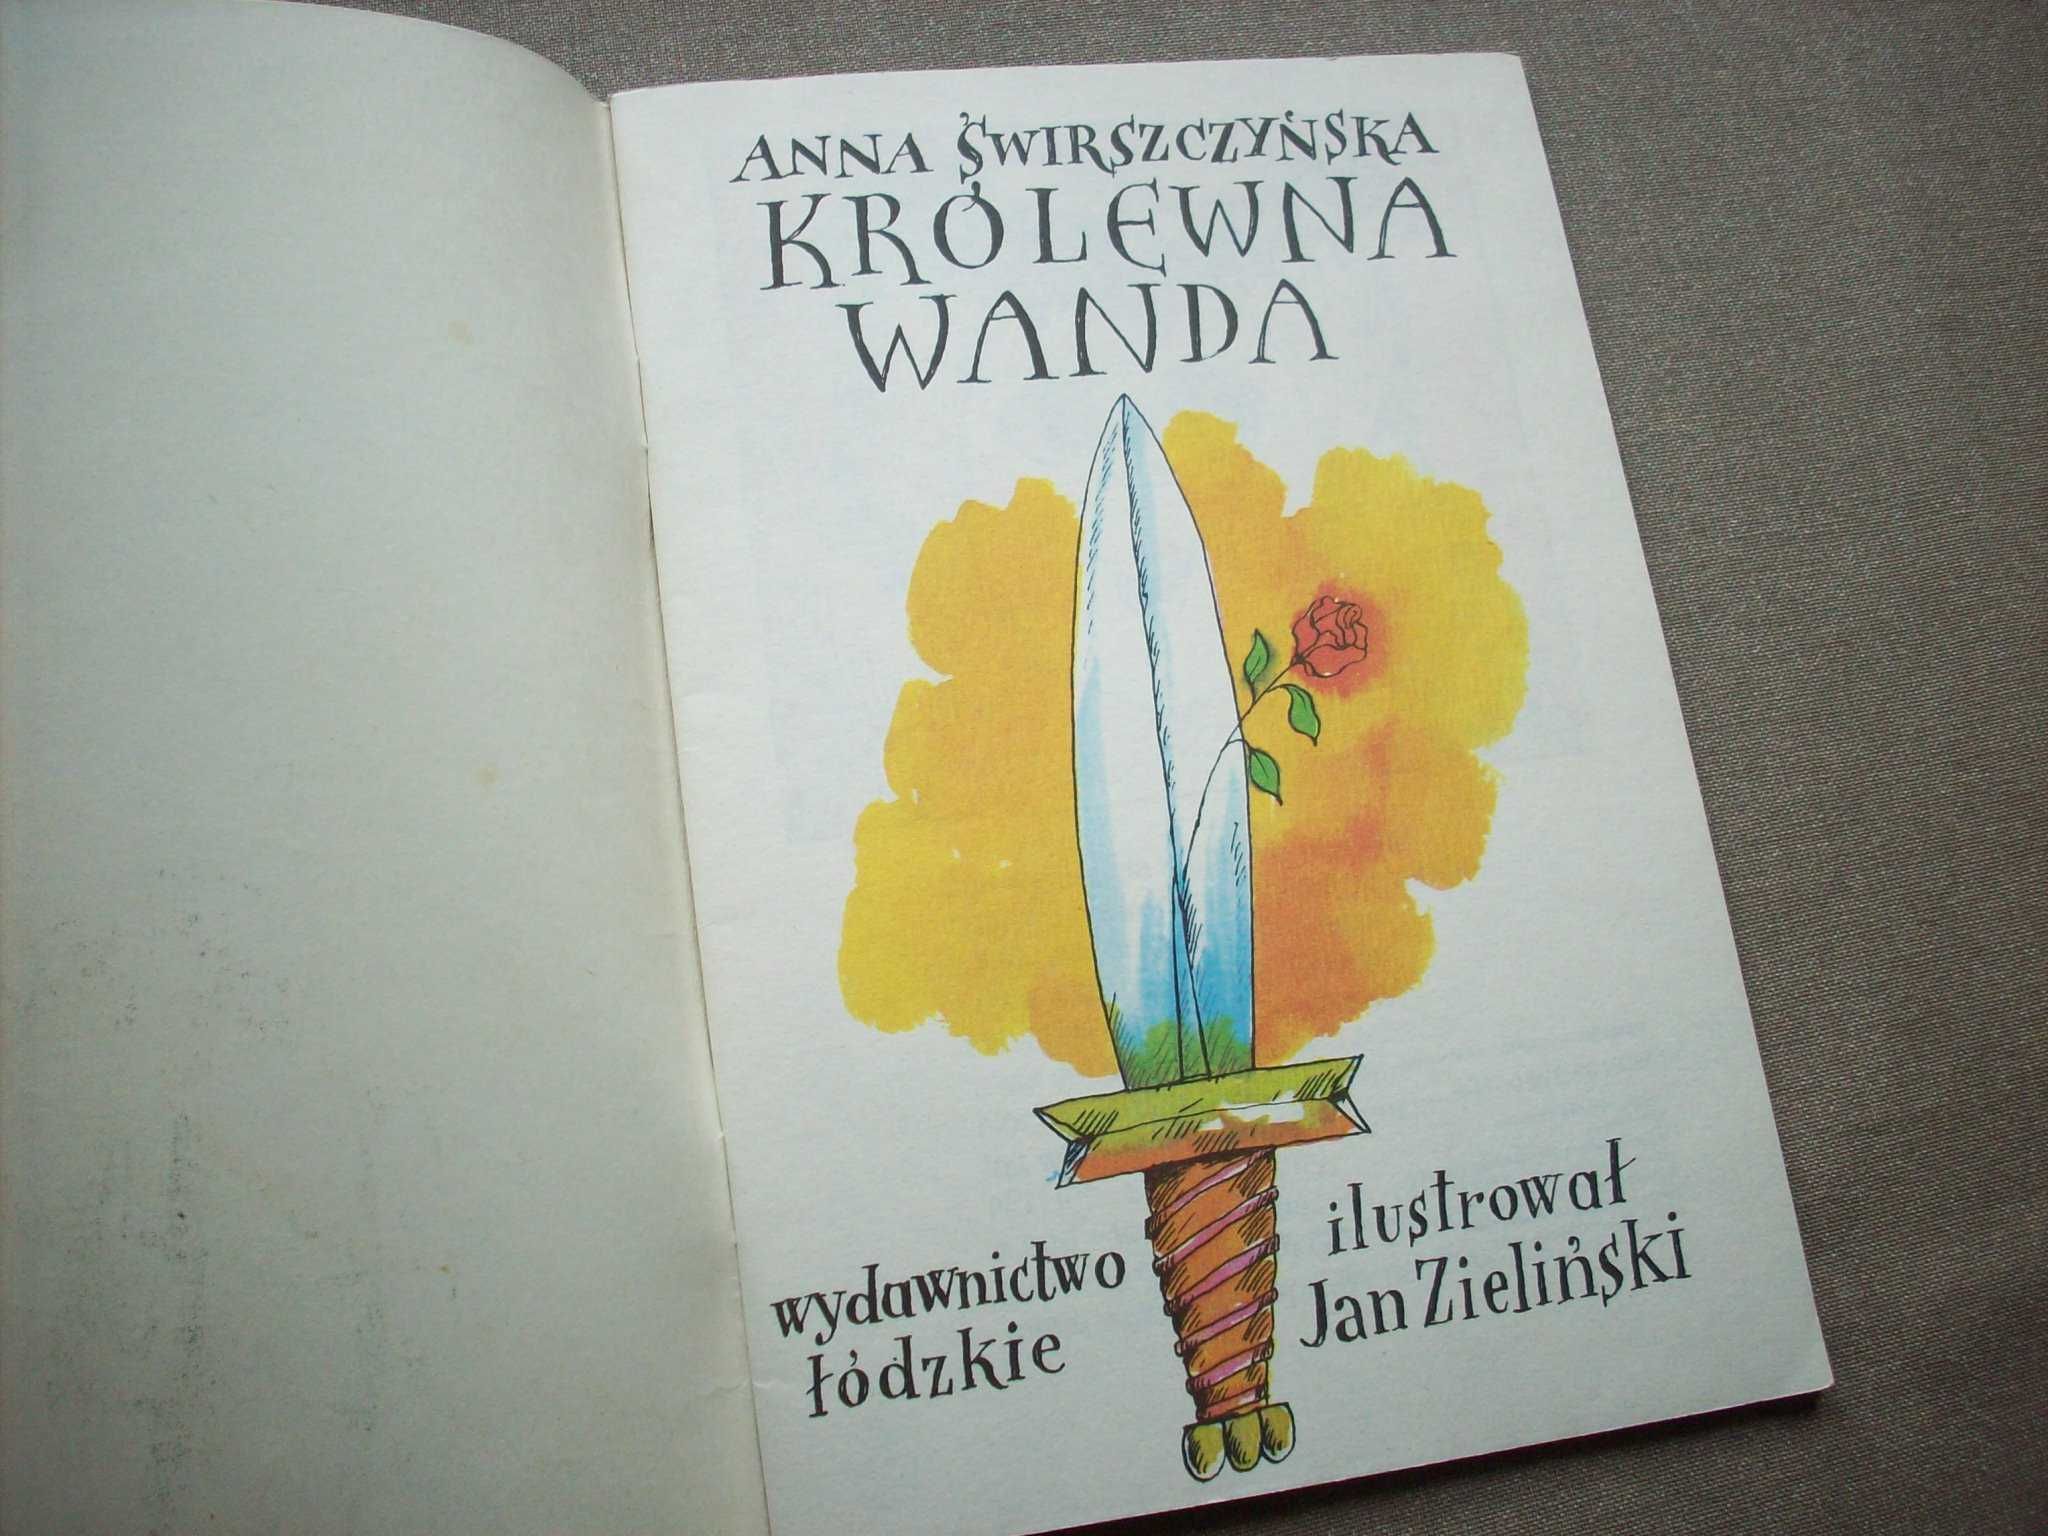 Królewna Wanda, A. Świrszczyńska, 1985.